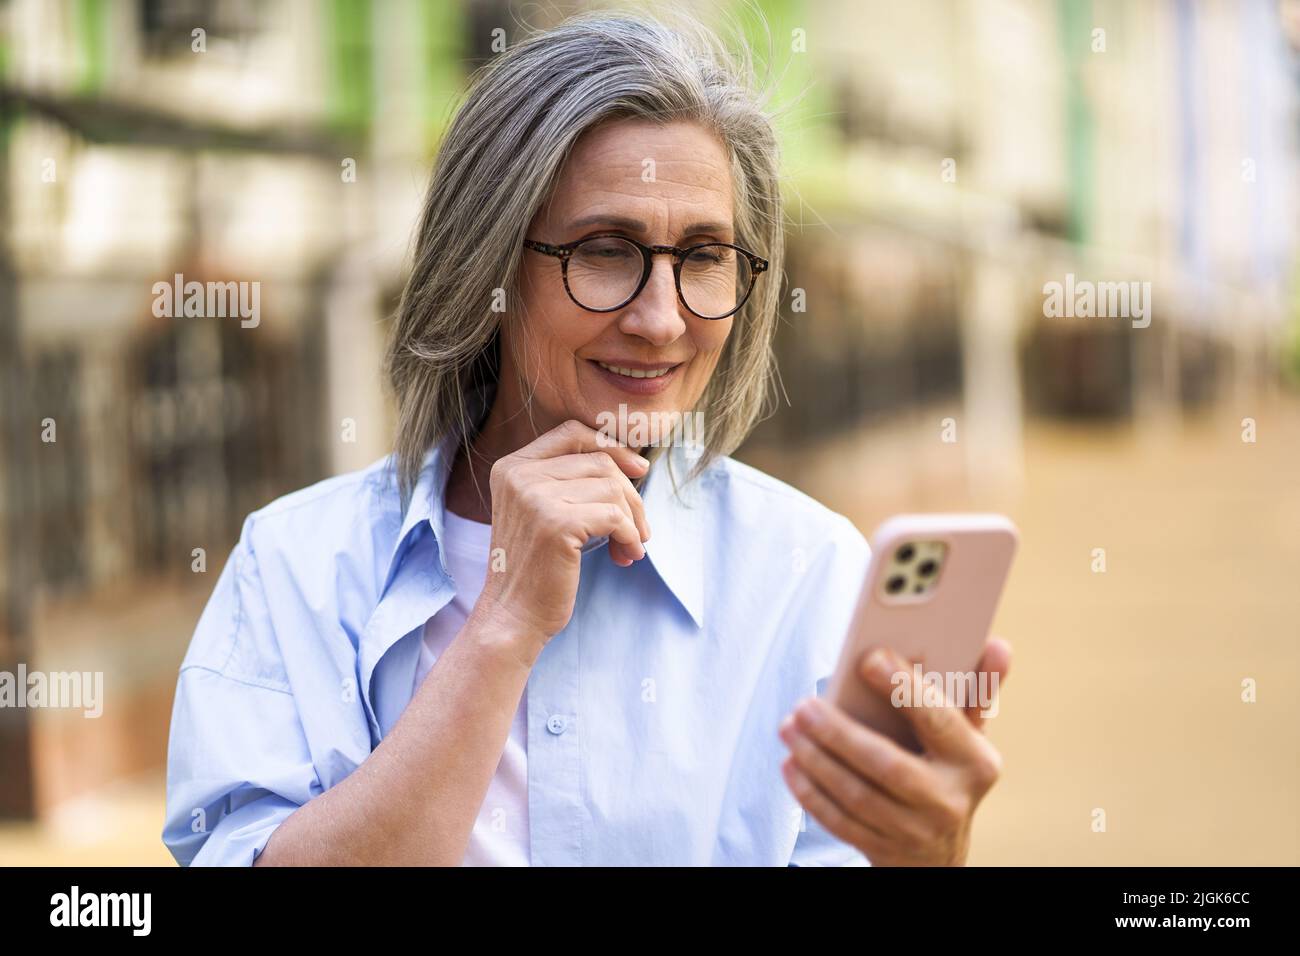 Affascinante donna matura con capelli grigi che tiene smartphone per le strade della città vecchia europea. Una donna matura legge un messaggio di testo o risponde a una videochiamata in piedi o all'aperto. Foto Stock